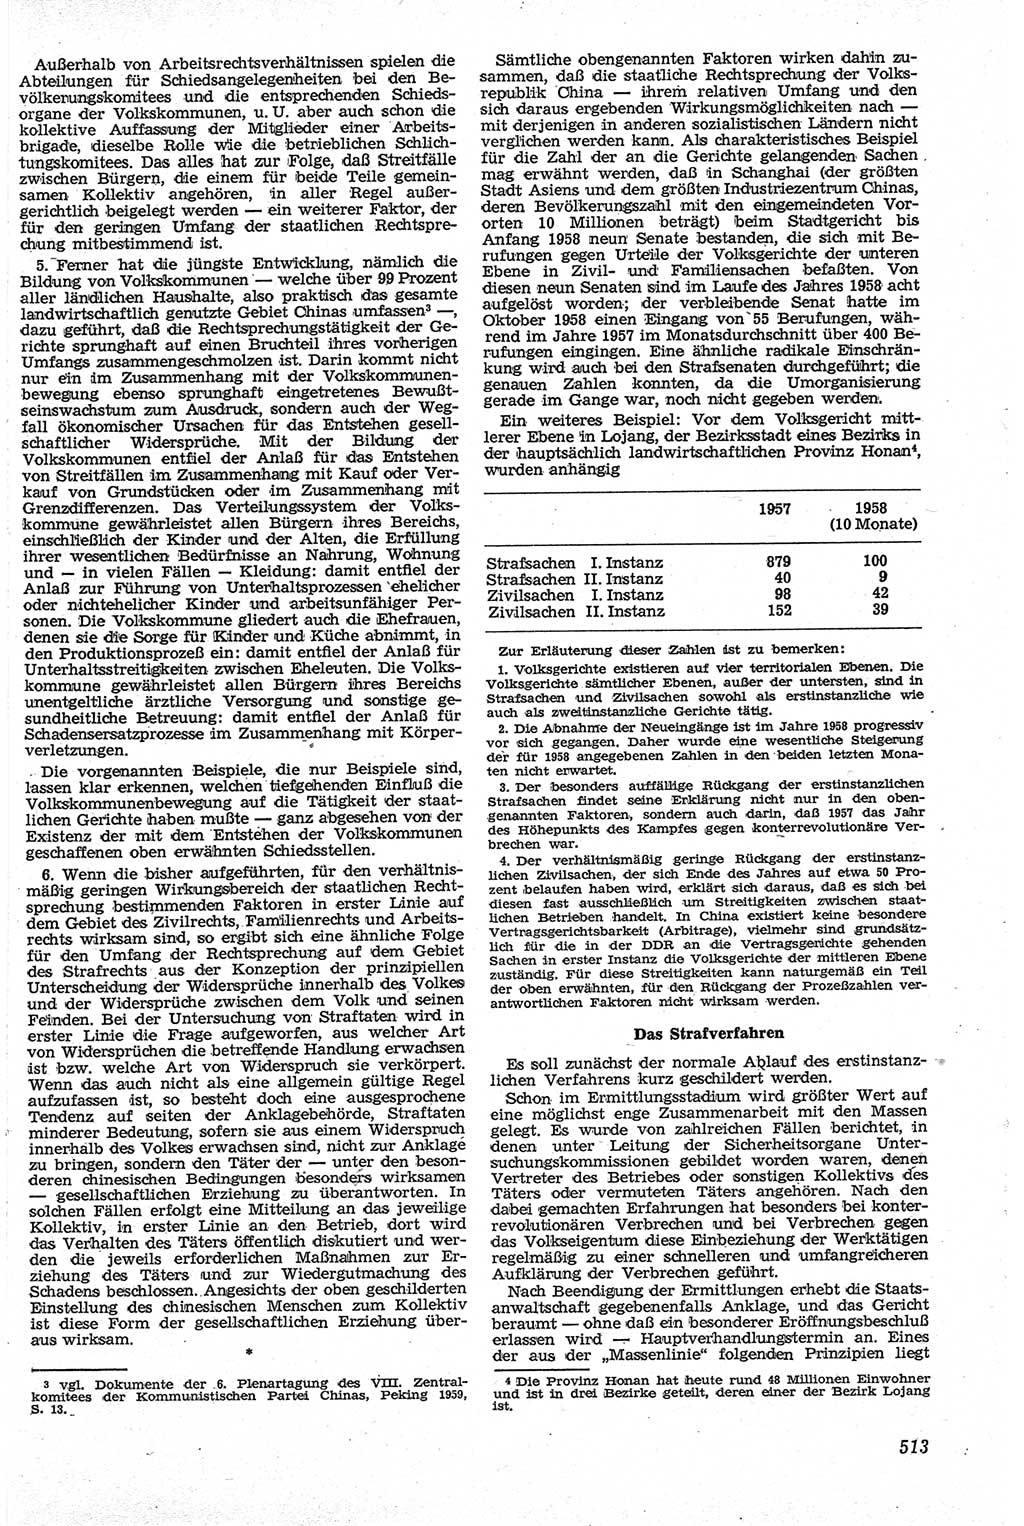 Neue Justiz (NJ), Zeitschrift für Recht und Rechtswissenschaft [Deutsche Demokratische Republik (DDR)], 13. Jahrgang 1959, Seite 513 (NJ DDR 1959, S. 513)